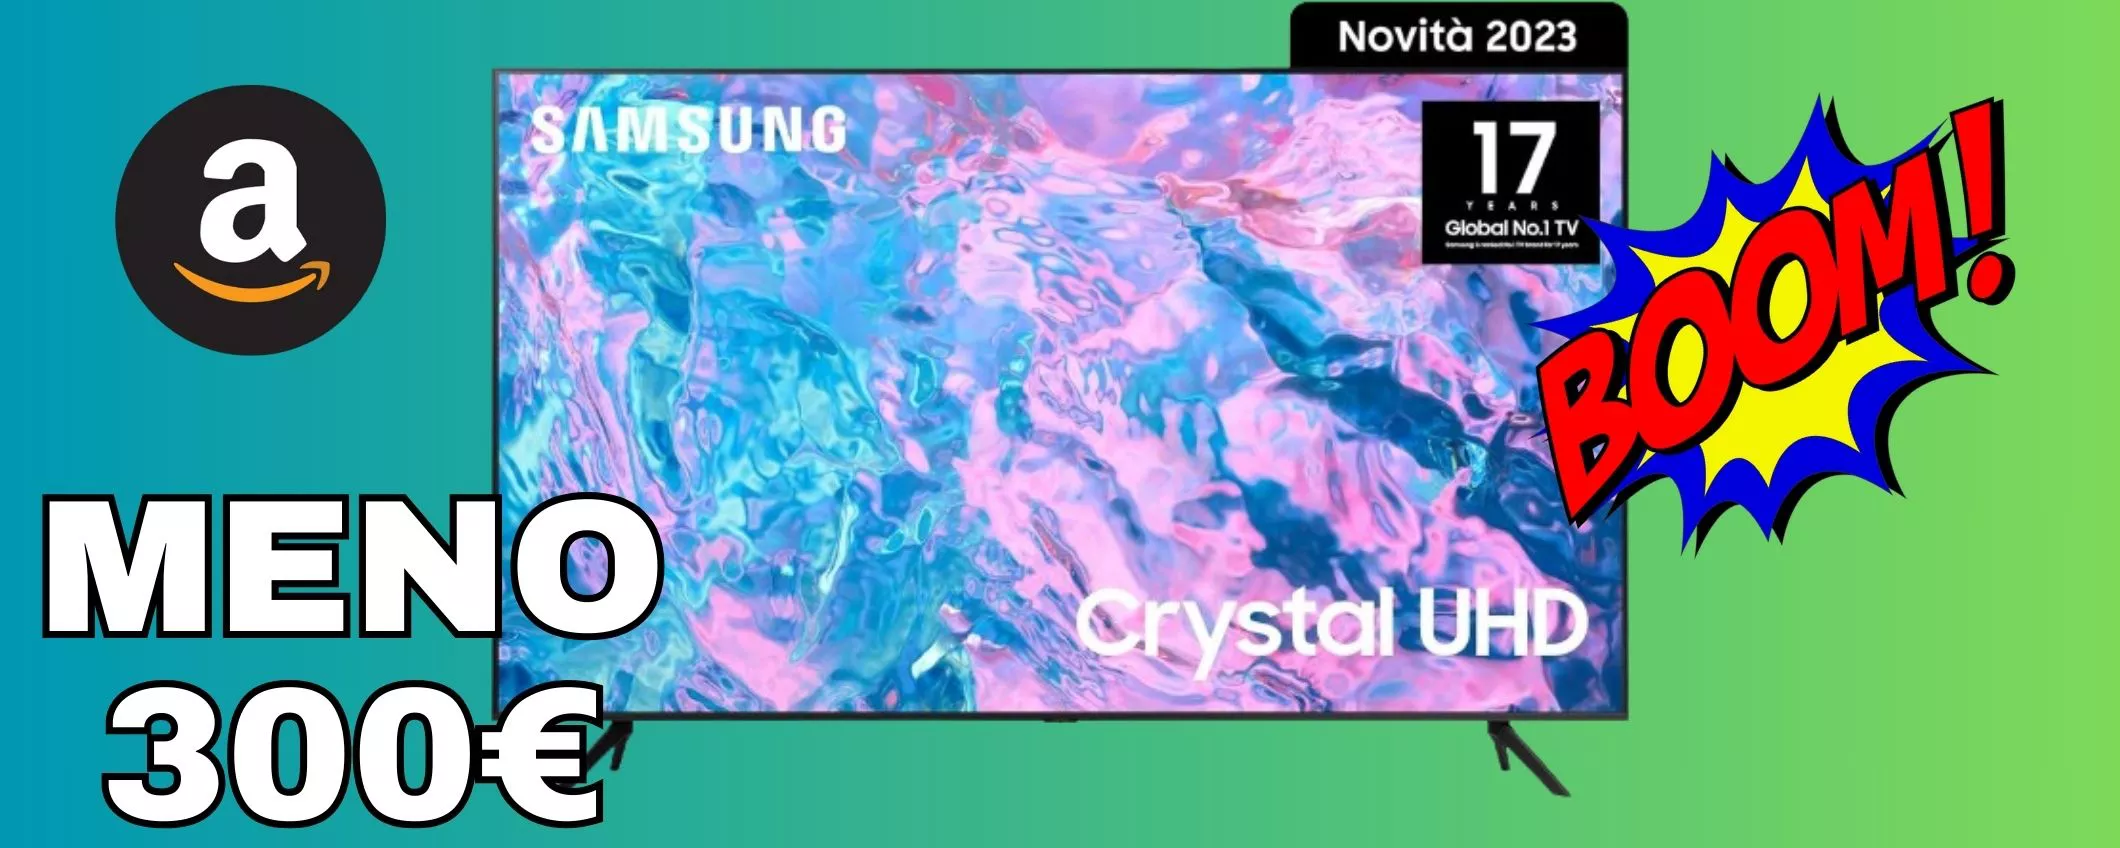 SAMSUNG Crystal UHD 65 pollici, lo sconto è esagerato: MENO 300 euro!